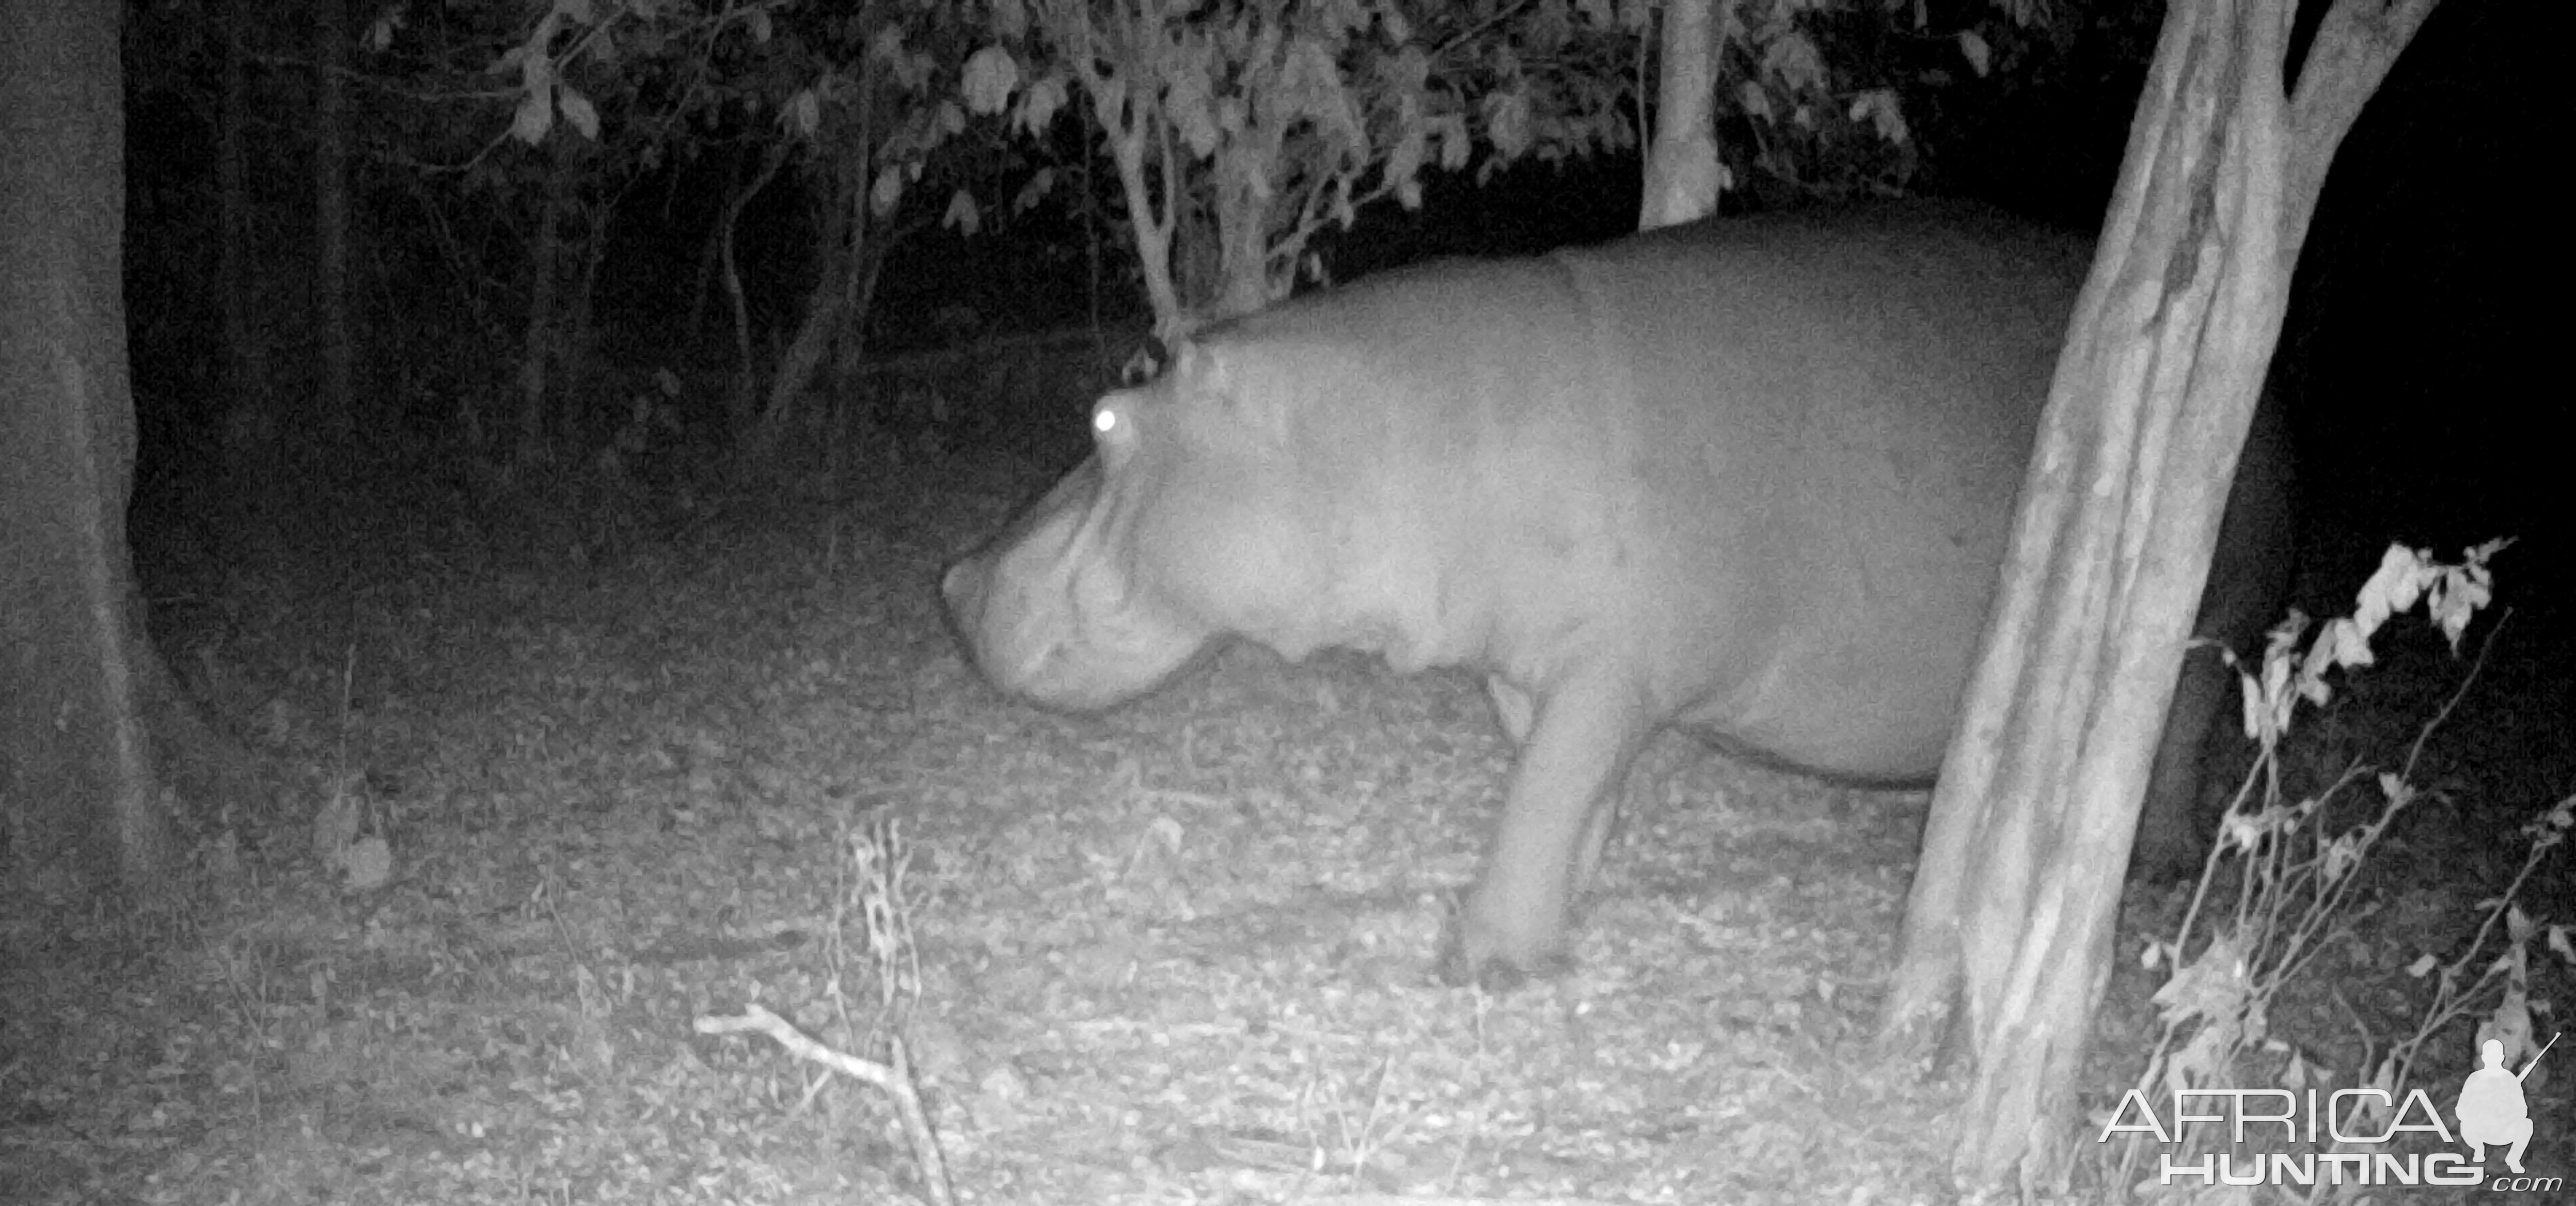 Hippo near camp.